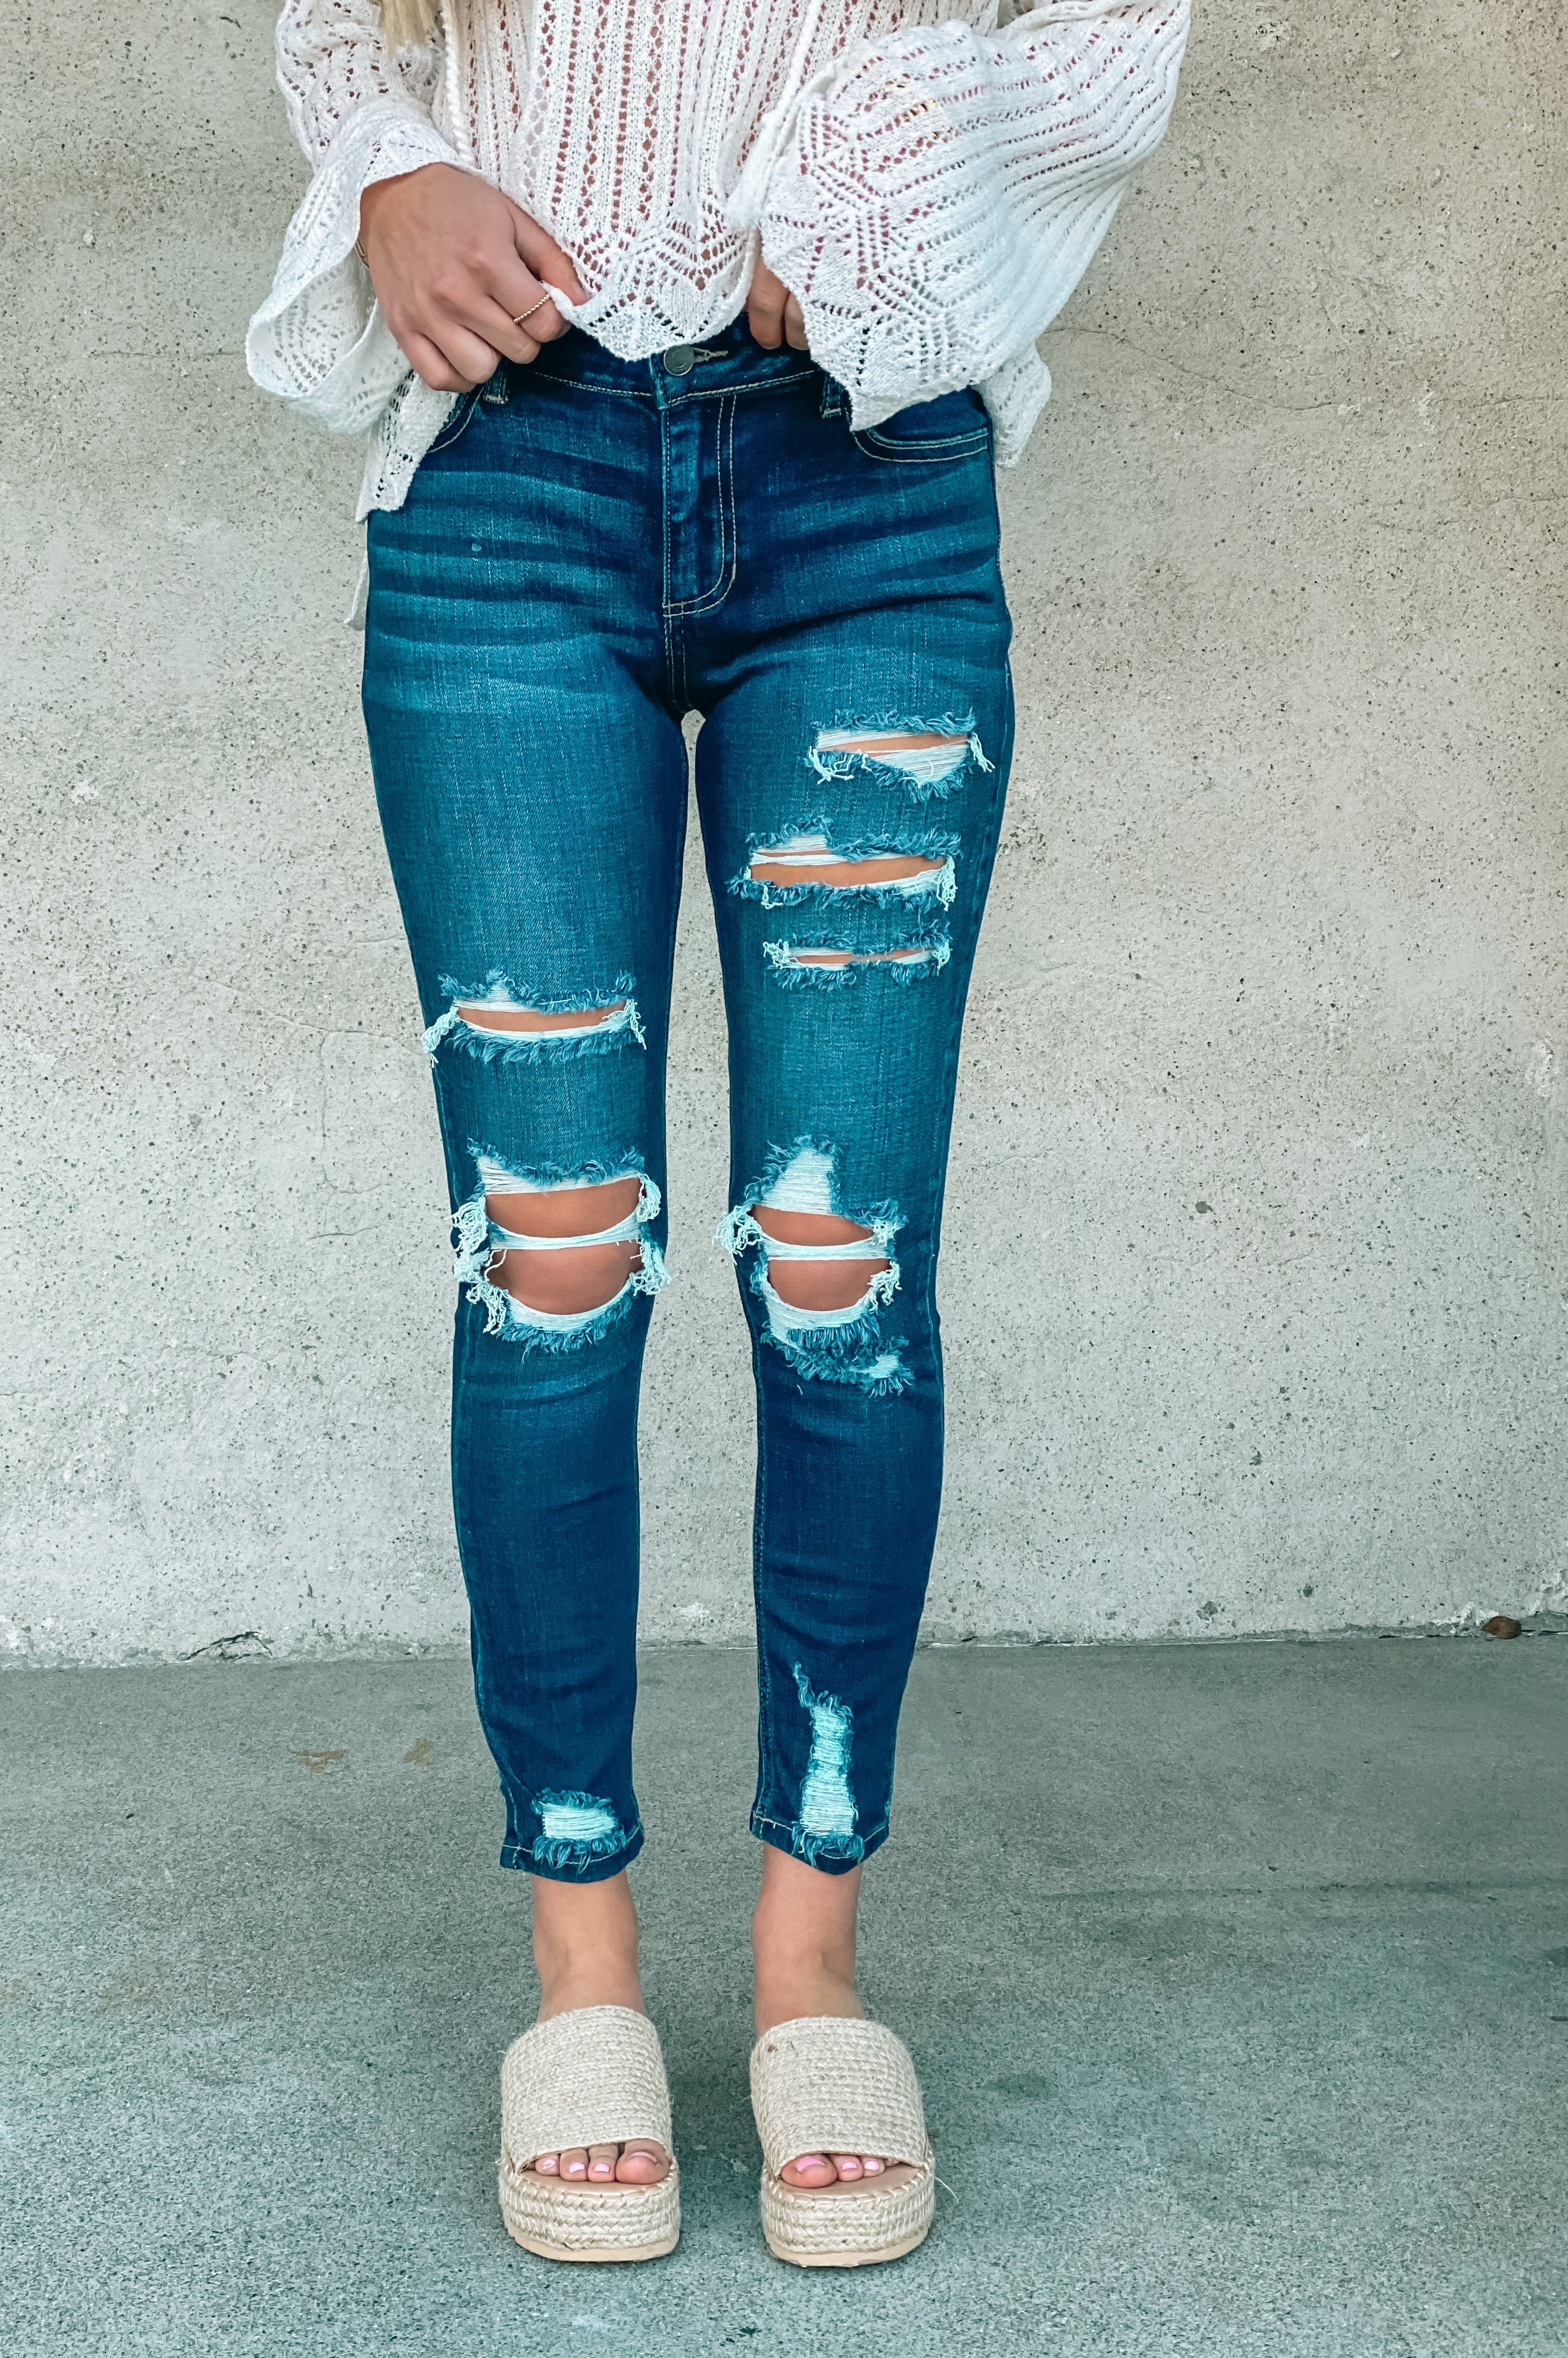 New Distressed Denim Jeans